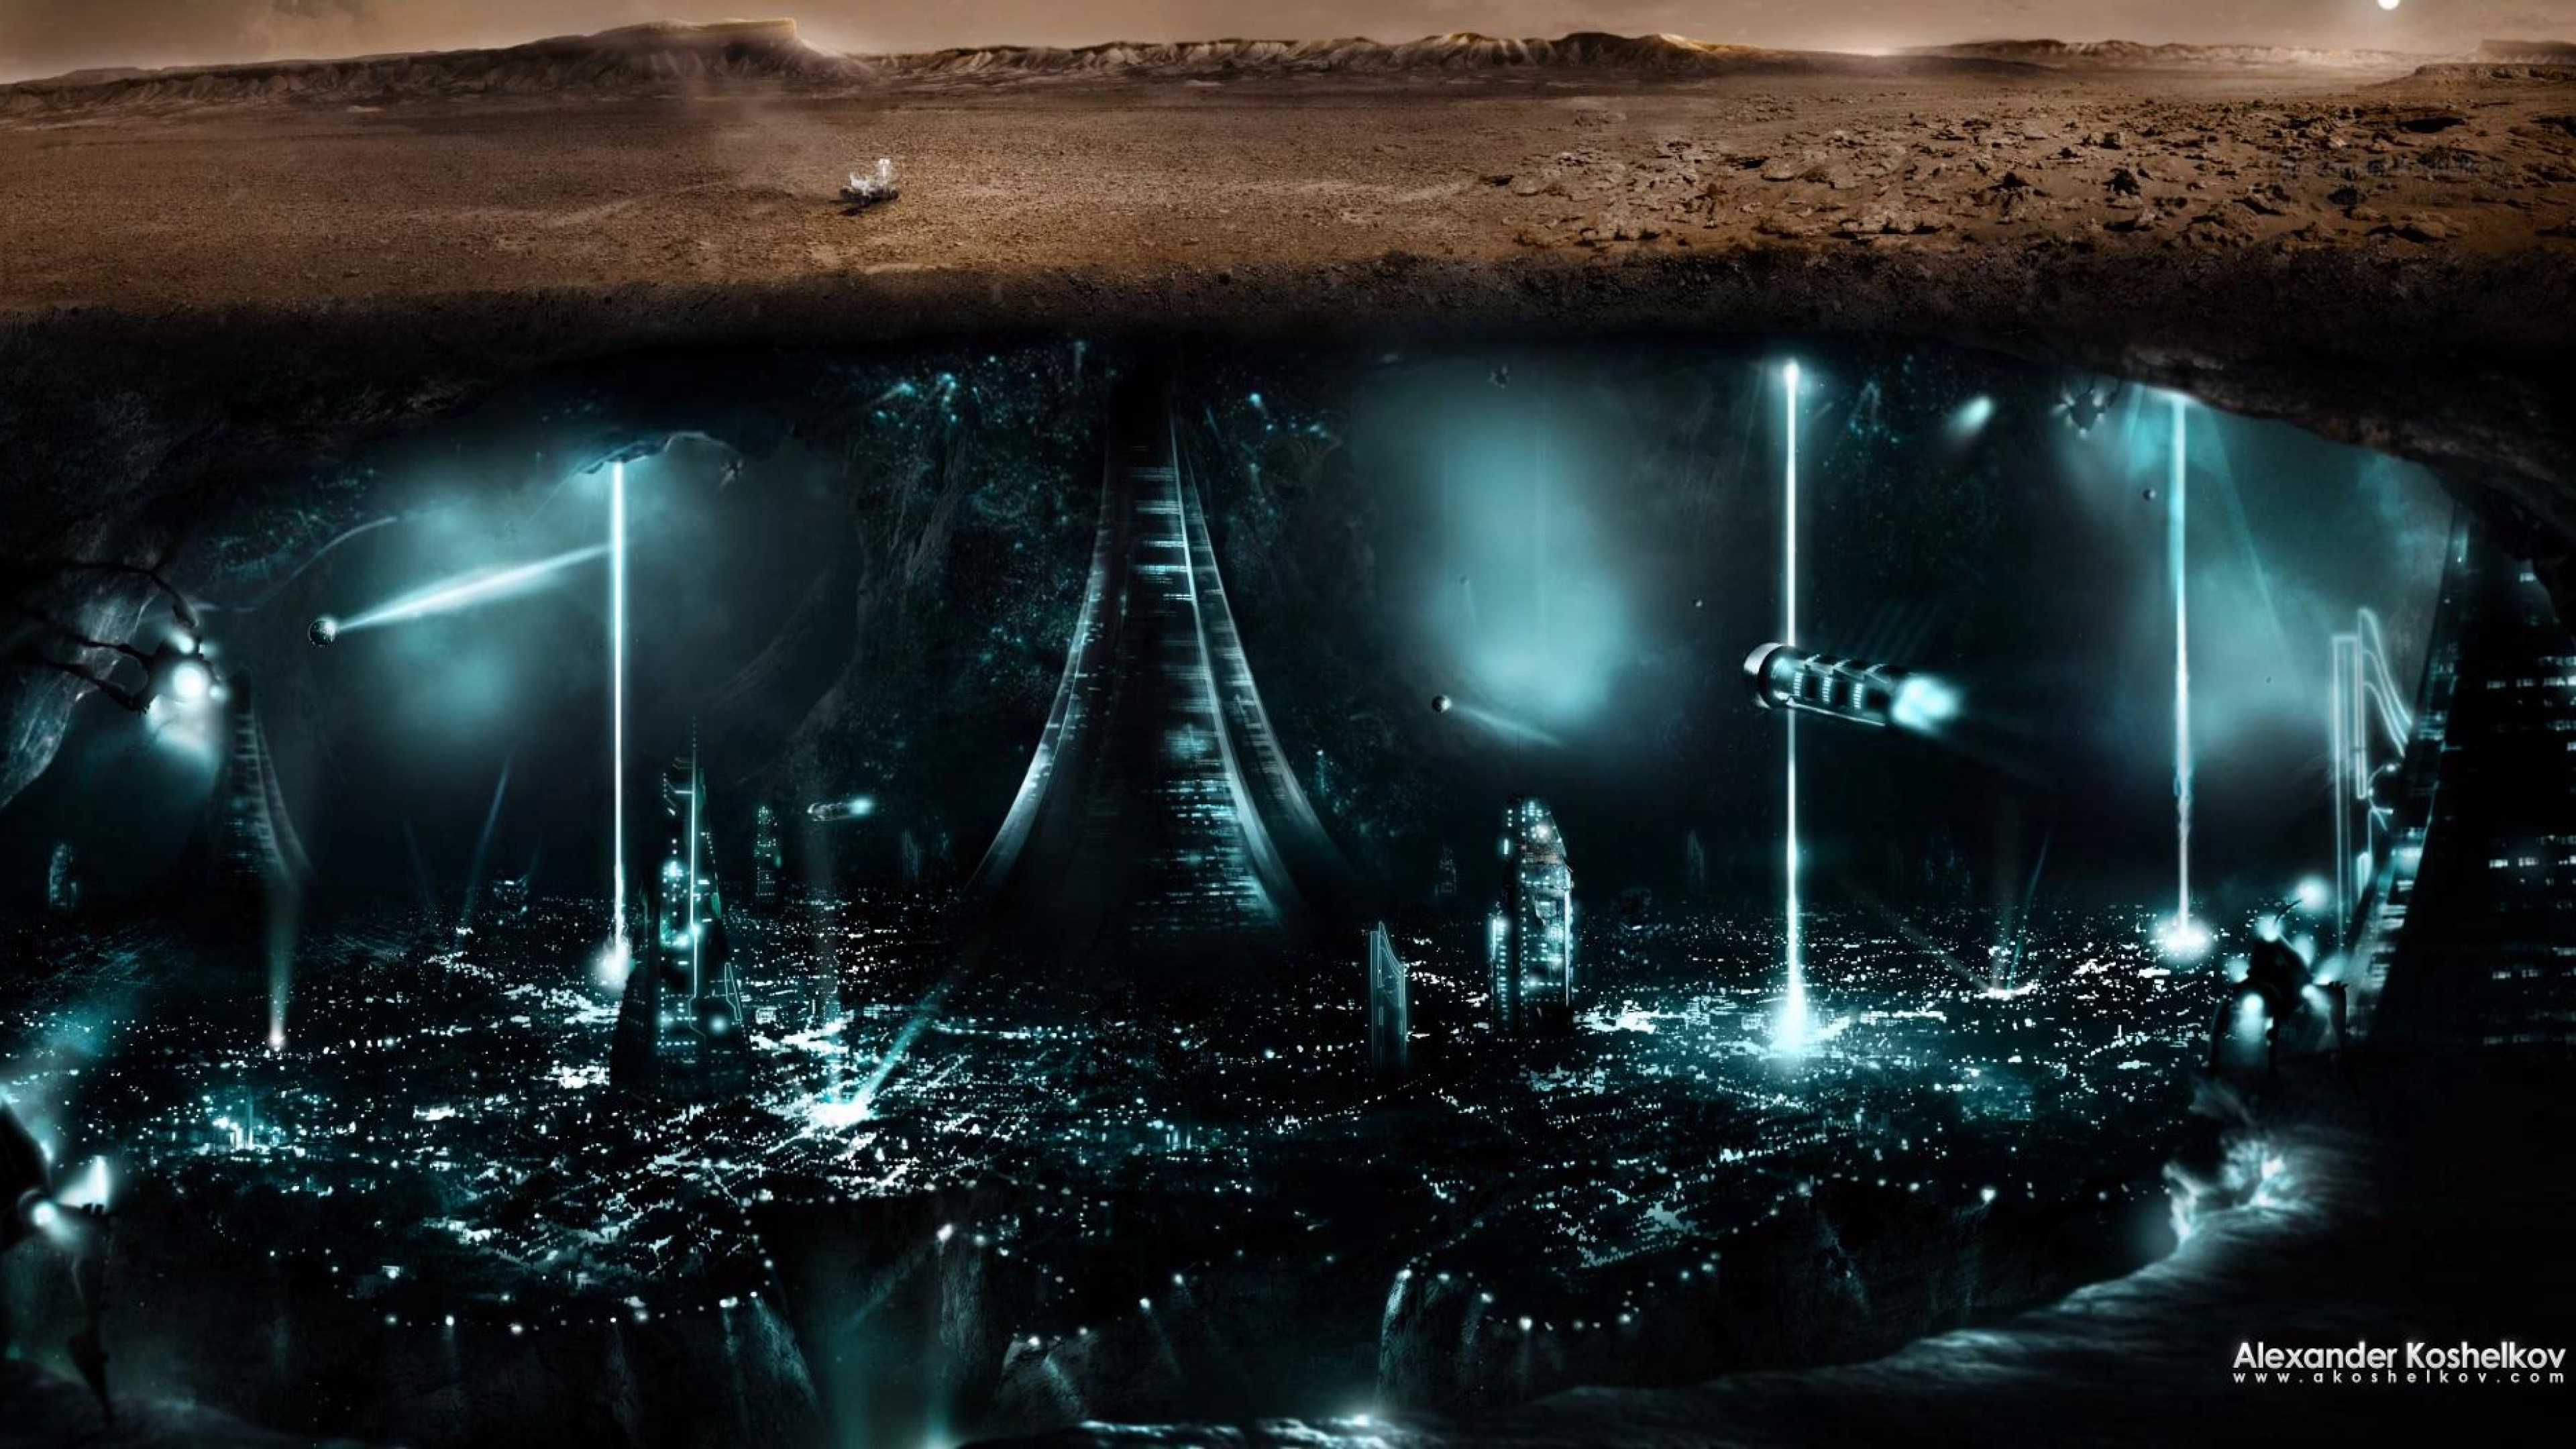 Где другие цивилизации. Город под землей. Фантастические подземные города. Подземный город будущего. Инопланетные цивилизации.